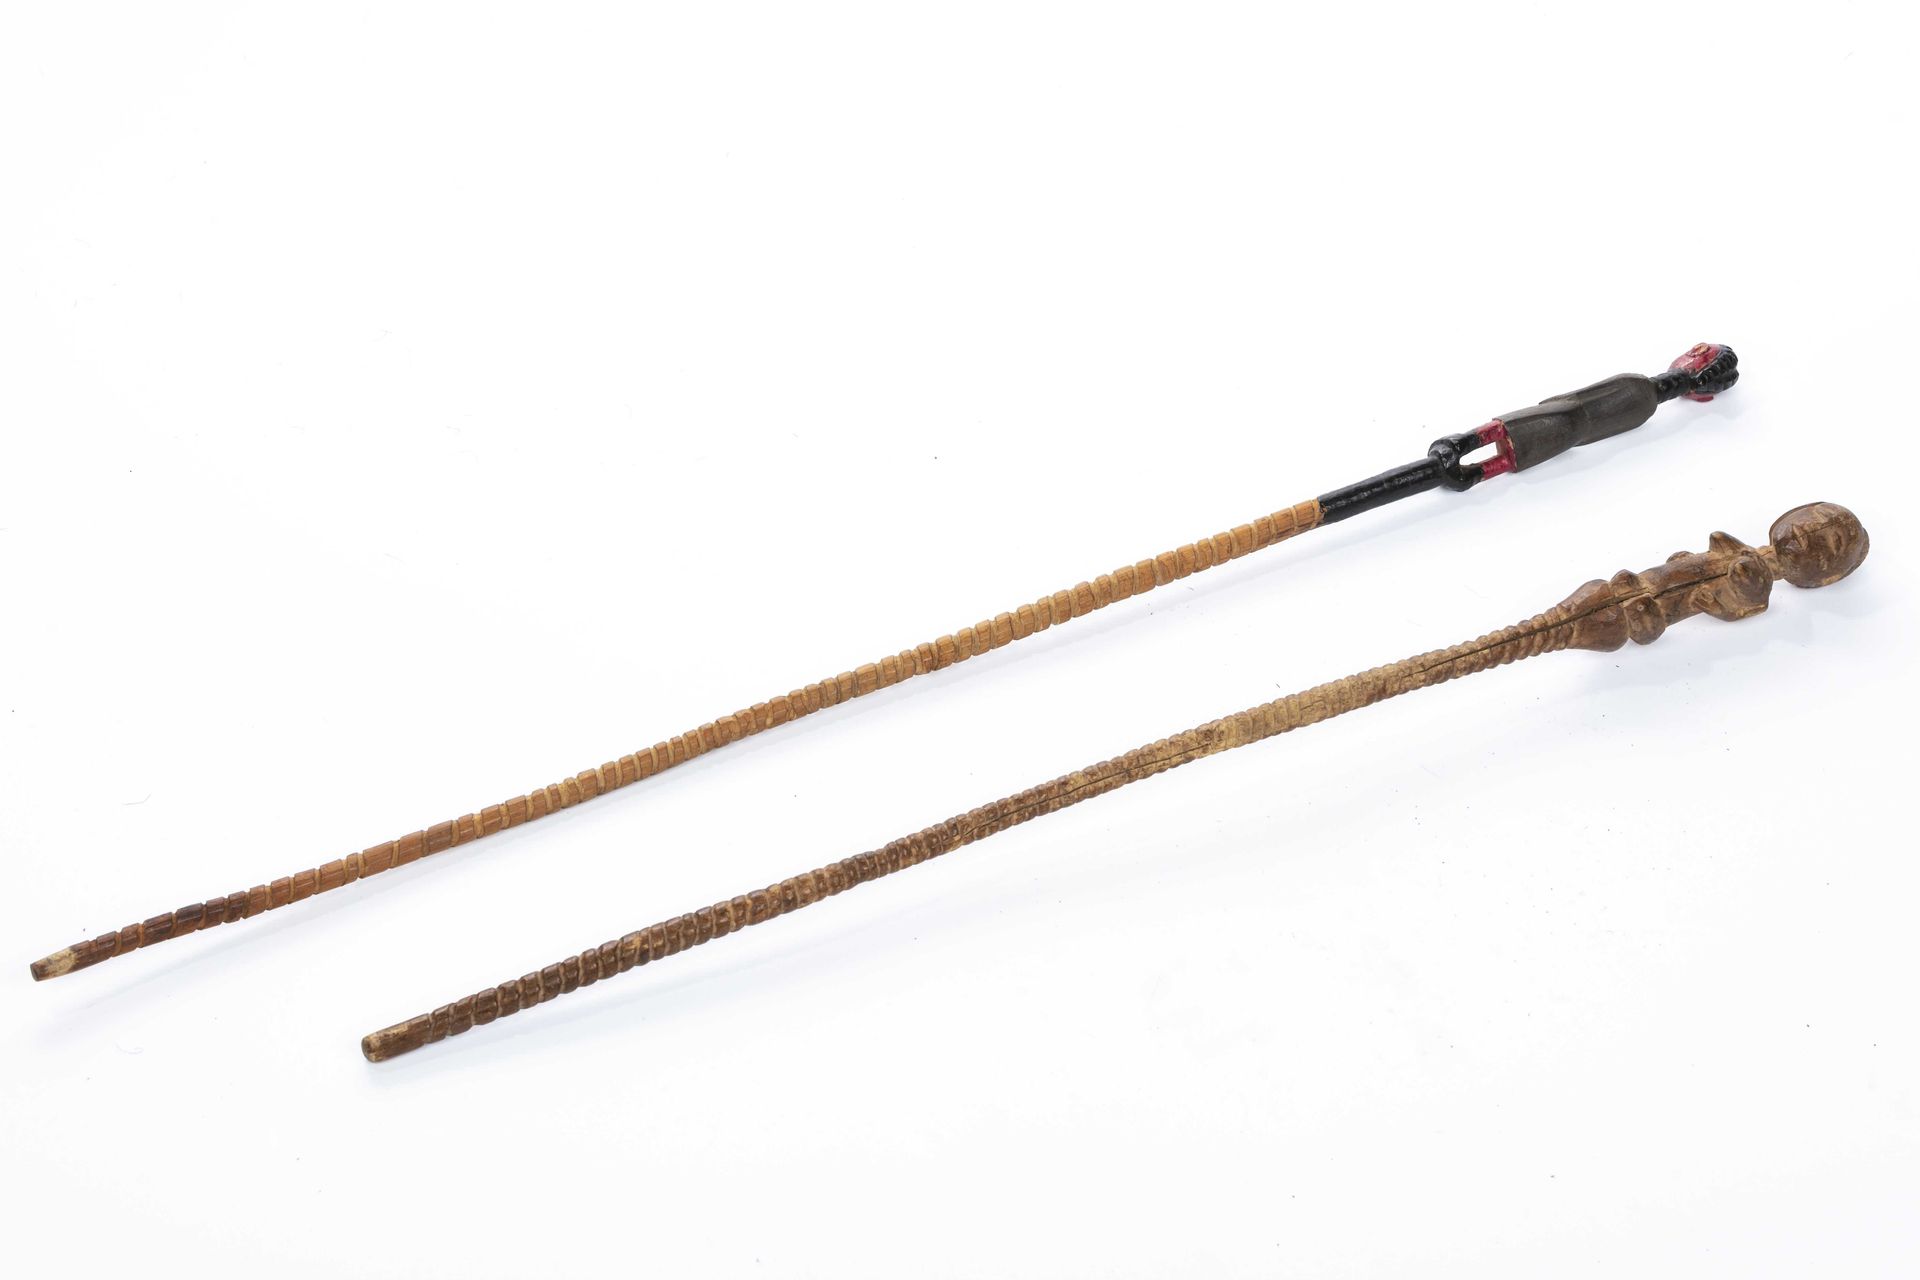 Null 一套权杖
木头
高：58和49厘米
一套2个权杖